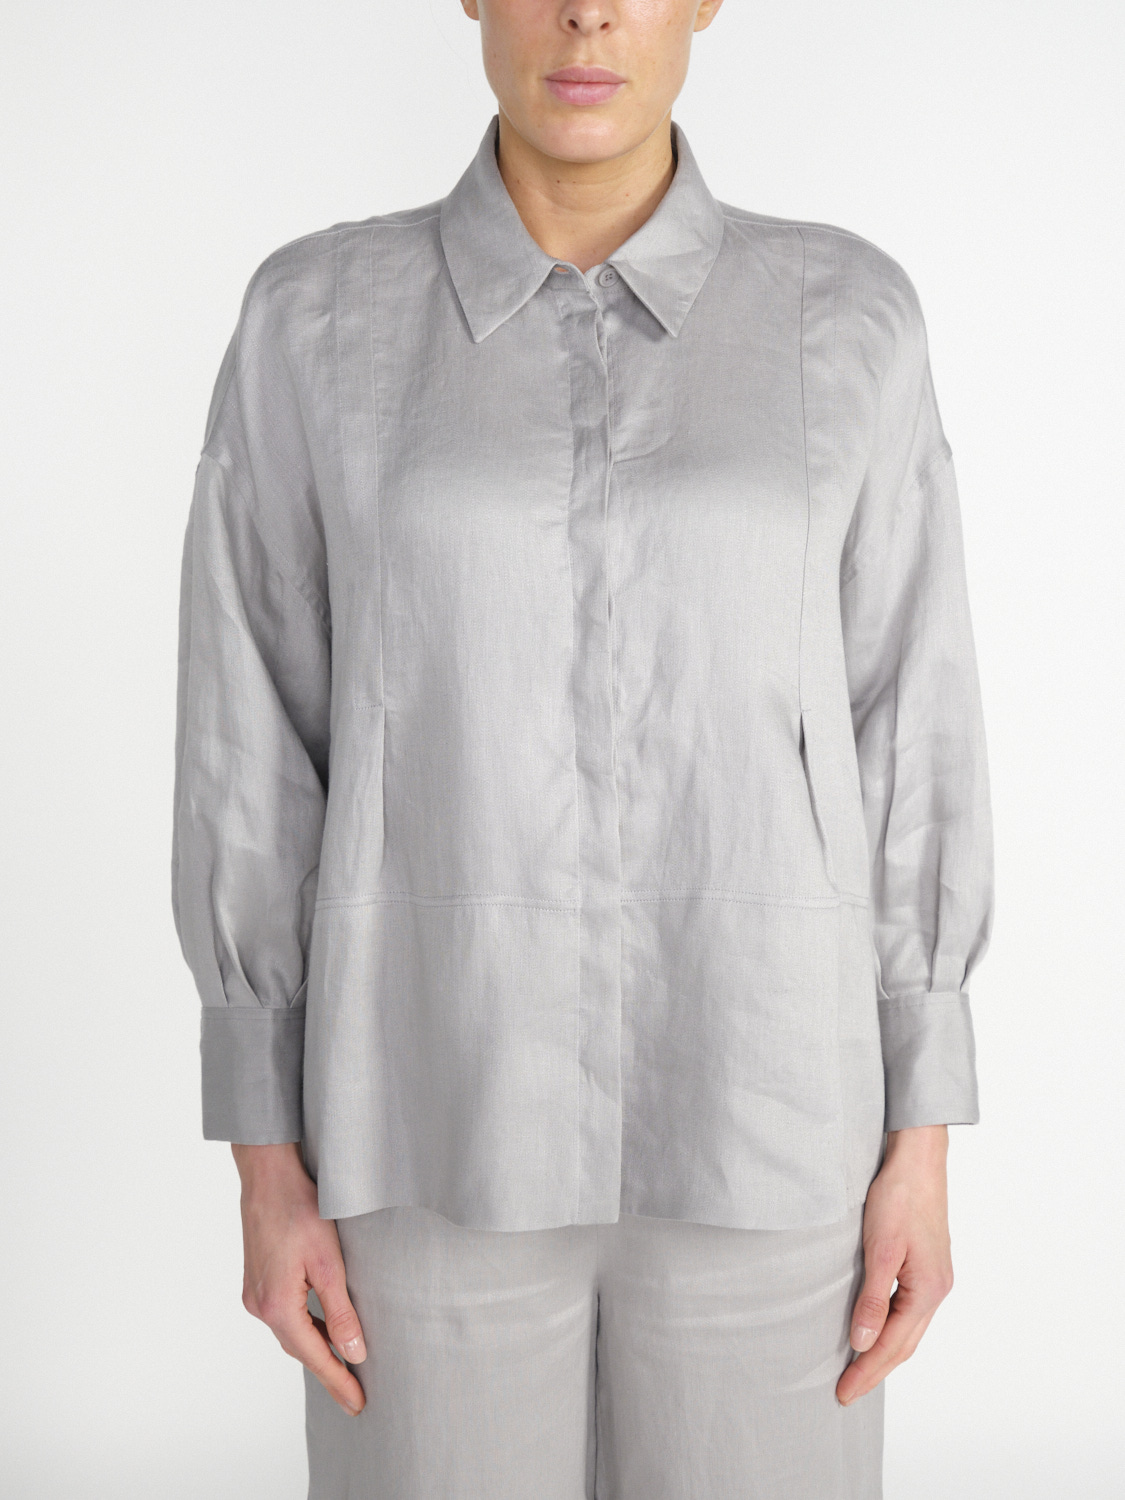 Iris von Arnim Laurita linen blouse  hellgrau 34